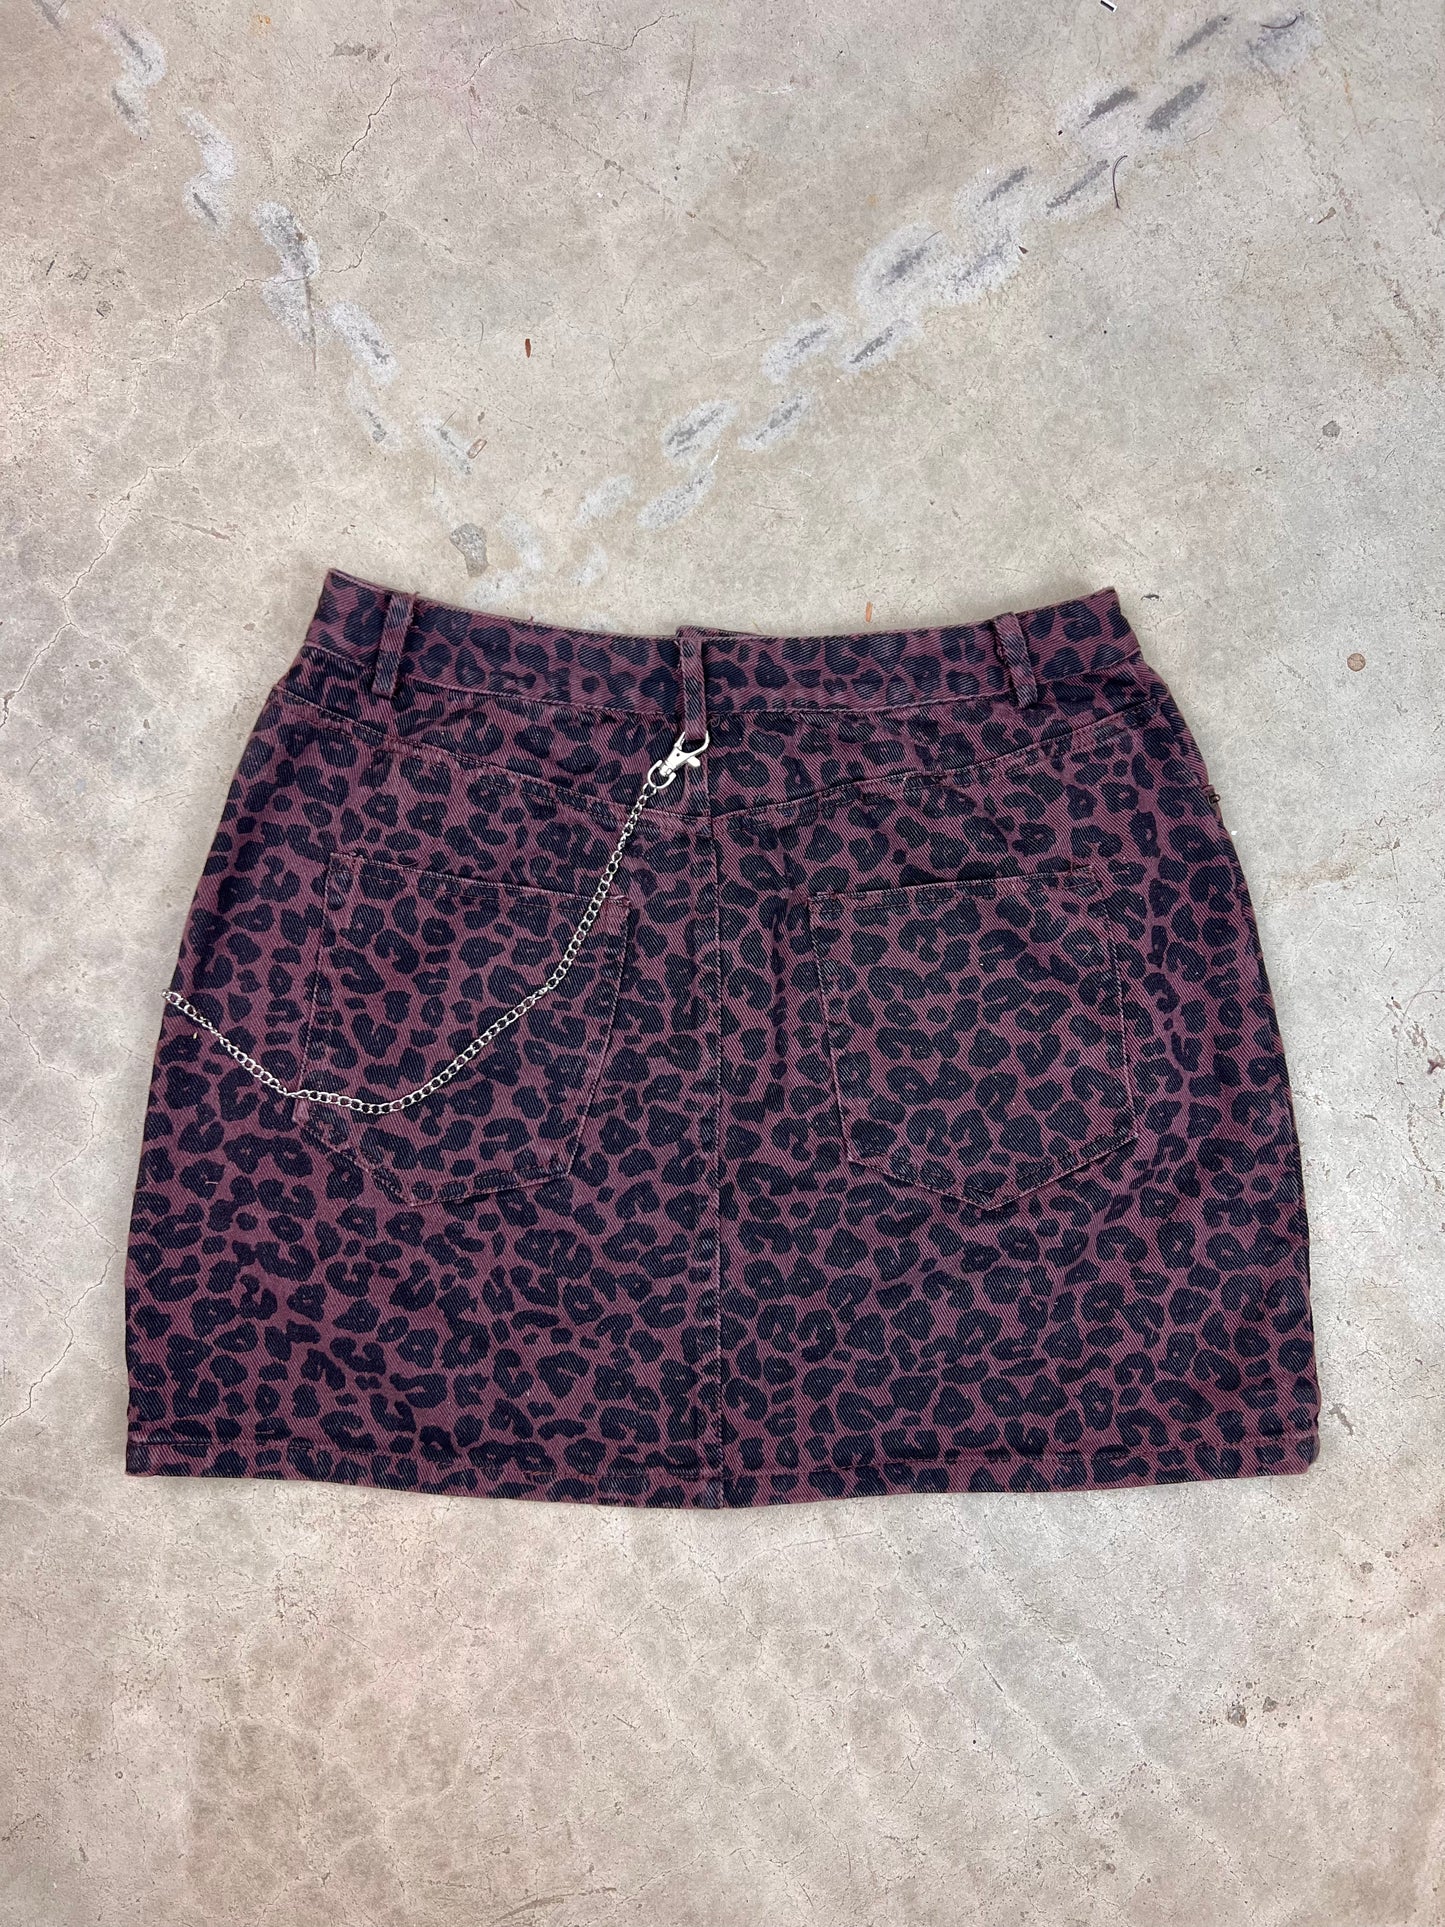 The Grommet Leopard Mini Skirt - L / 29"